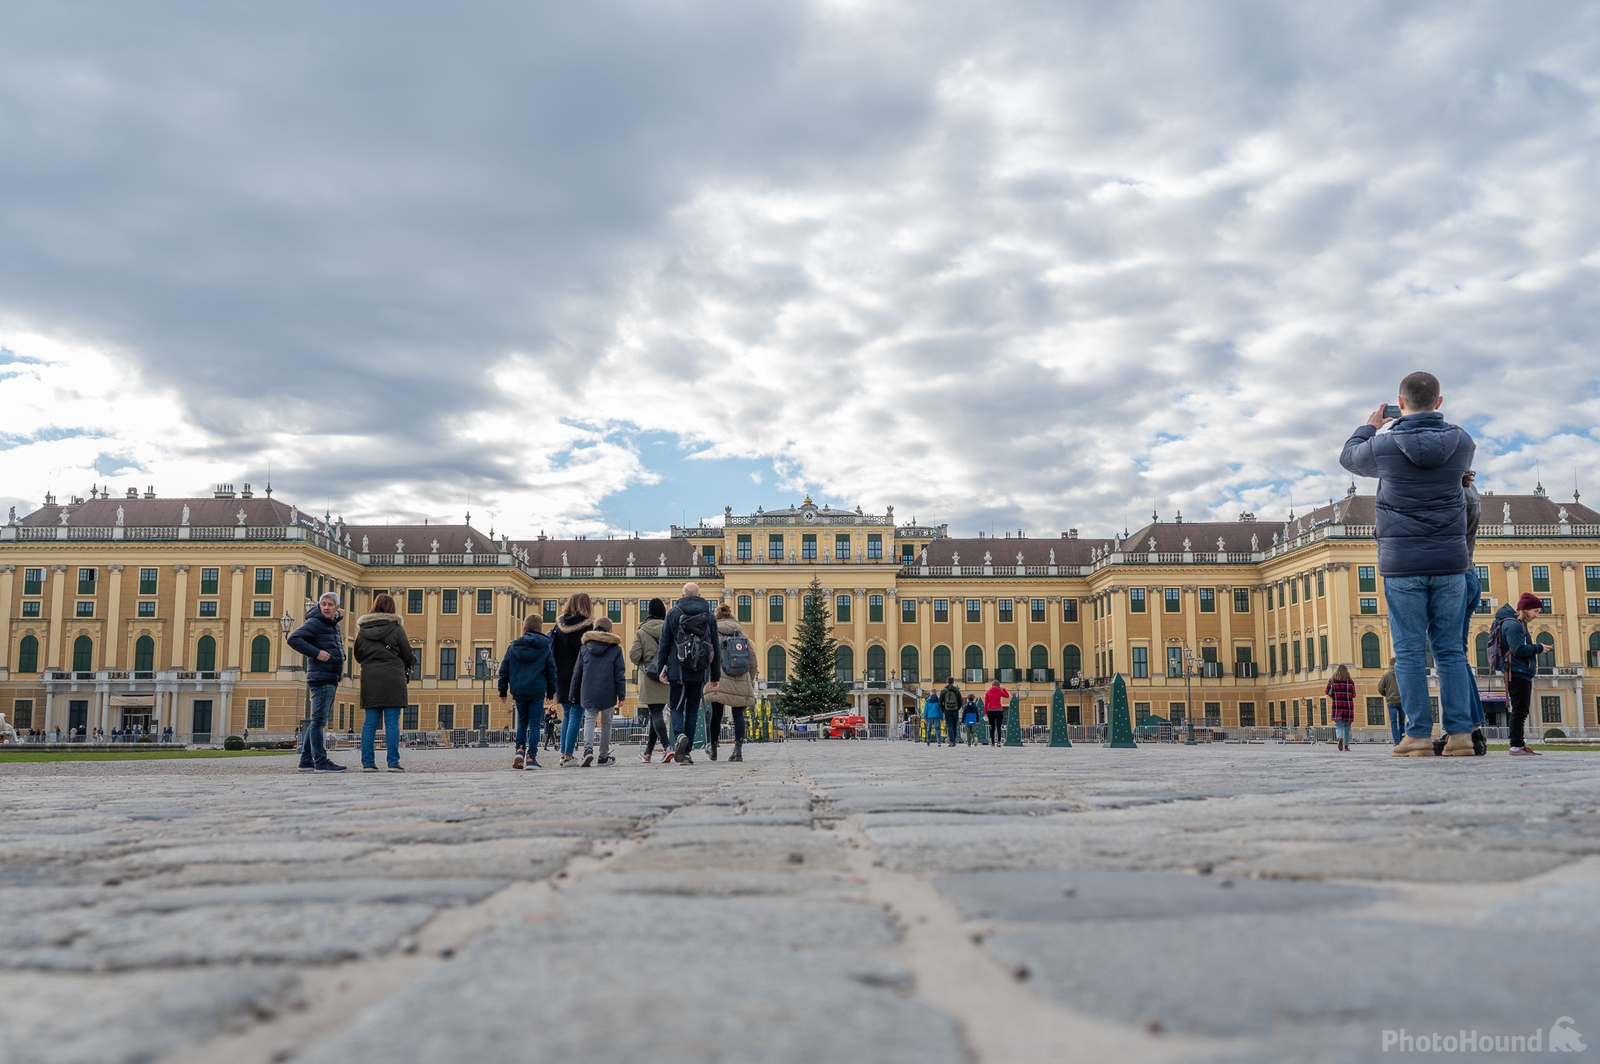 Image of Schönbrunn Palace by Julia Bespalov